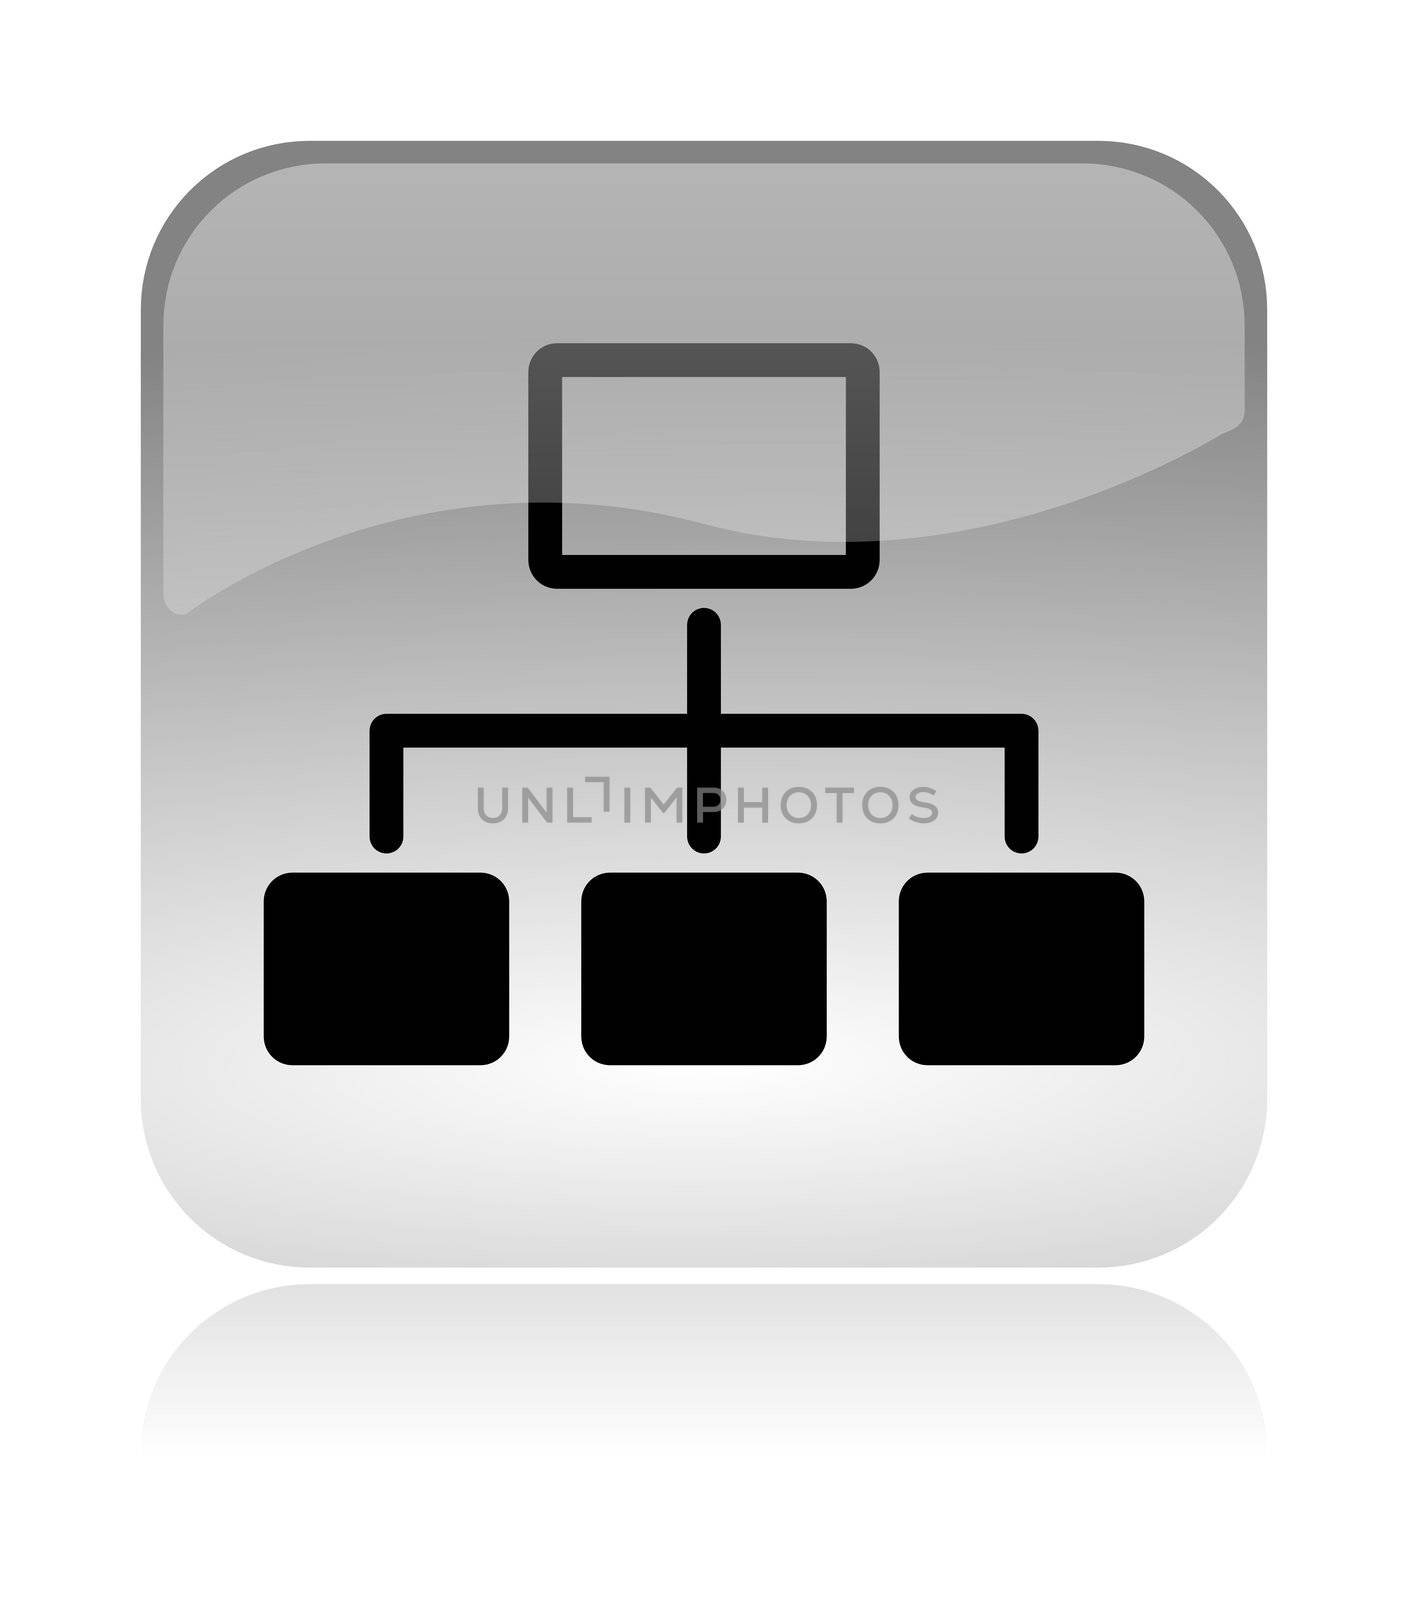 Network scheme web interface icon by make